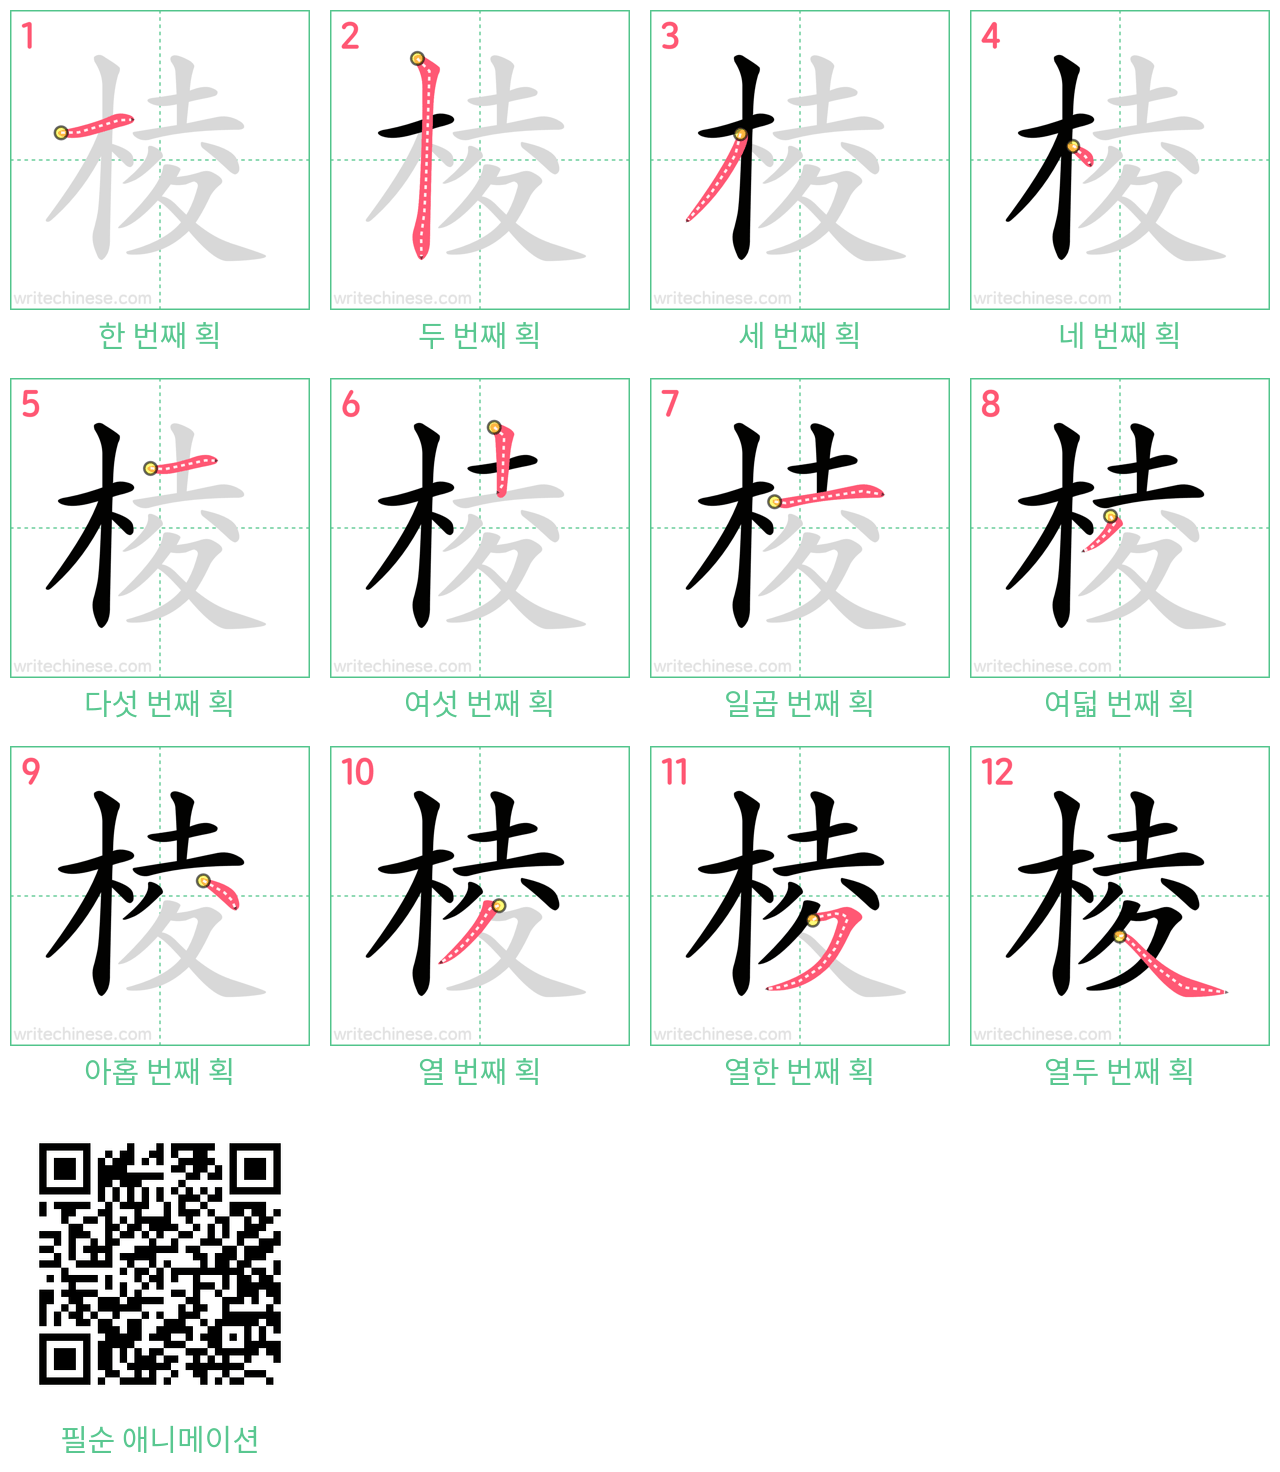 棱 step-by-step stroke order diagrams